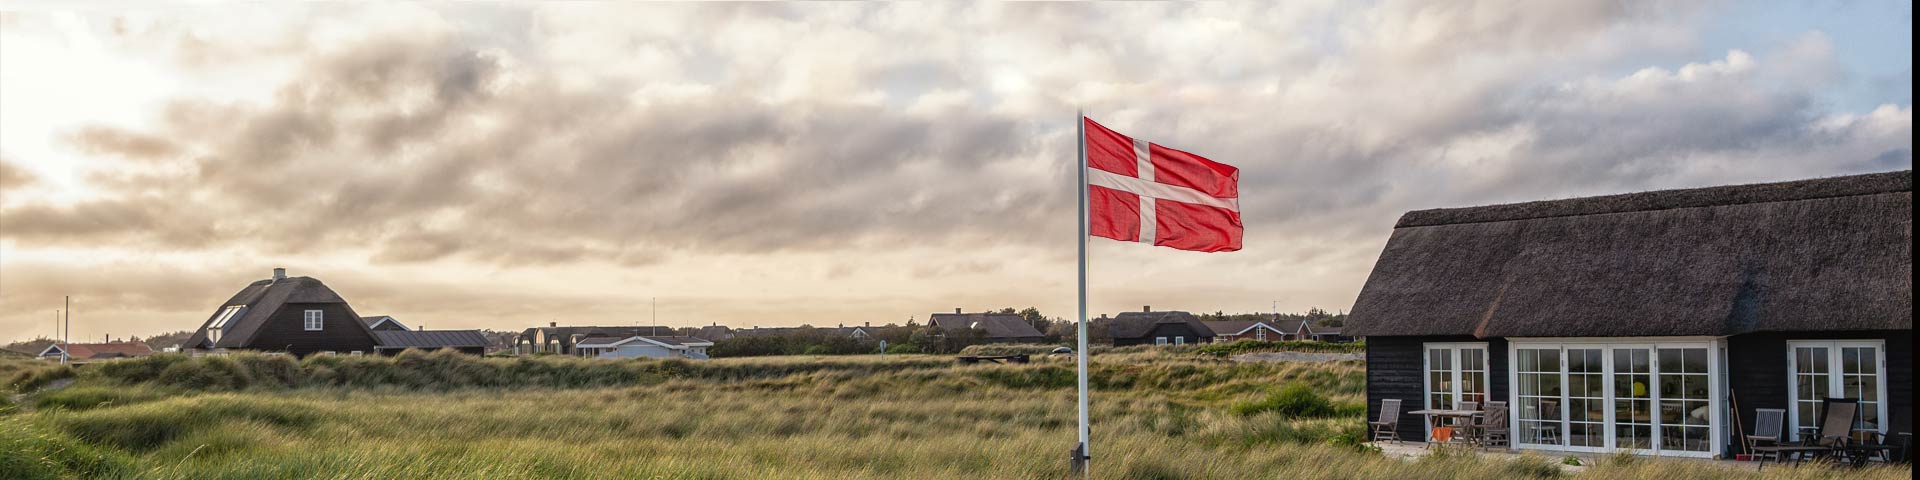 Ferienhäuser Dänemark - Jetzt aktuelle Angebote vergleichen